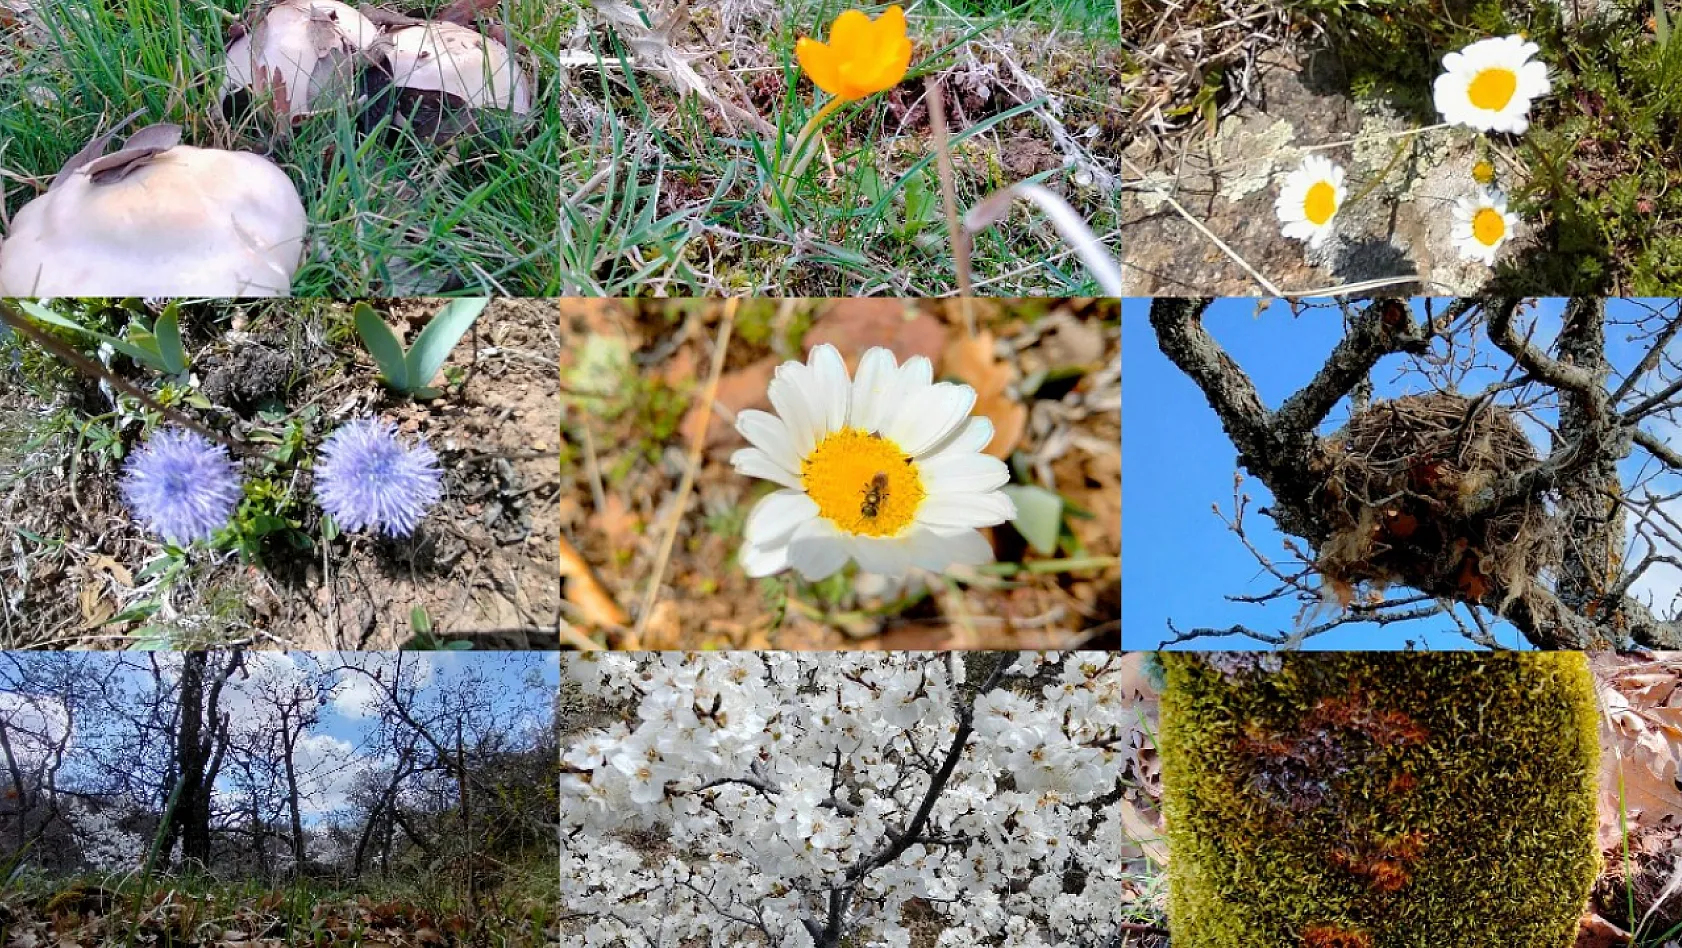 Memlekete bahar geldi! Bu fotoğraflar Kayseri'de çekildi